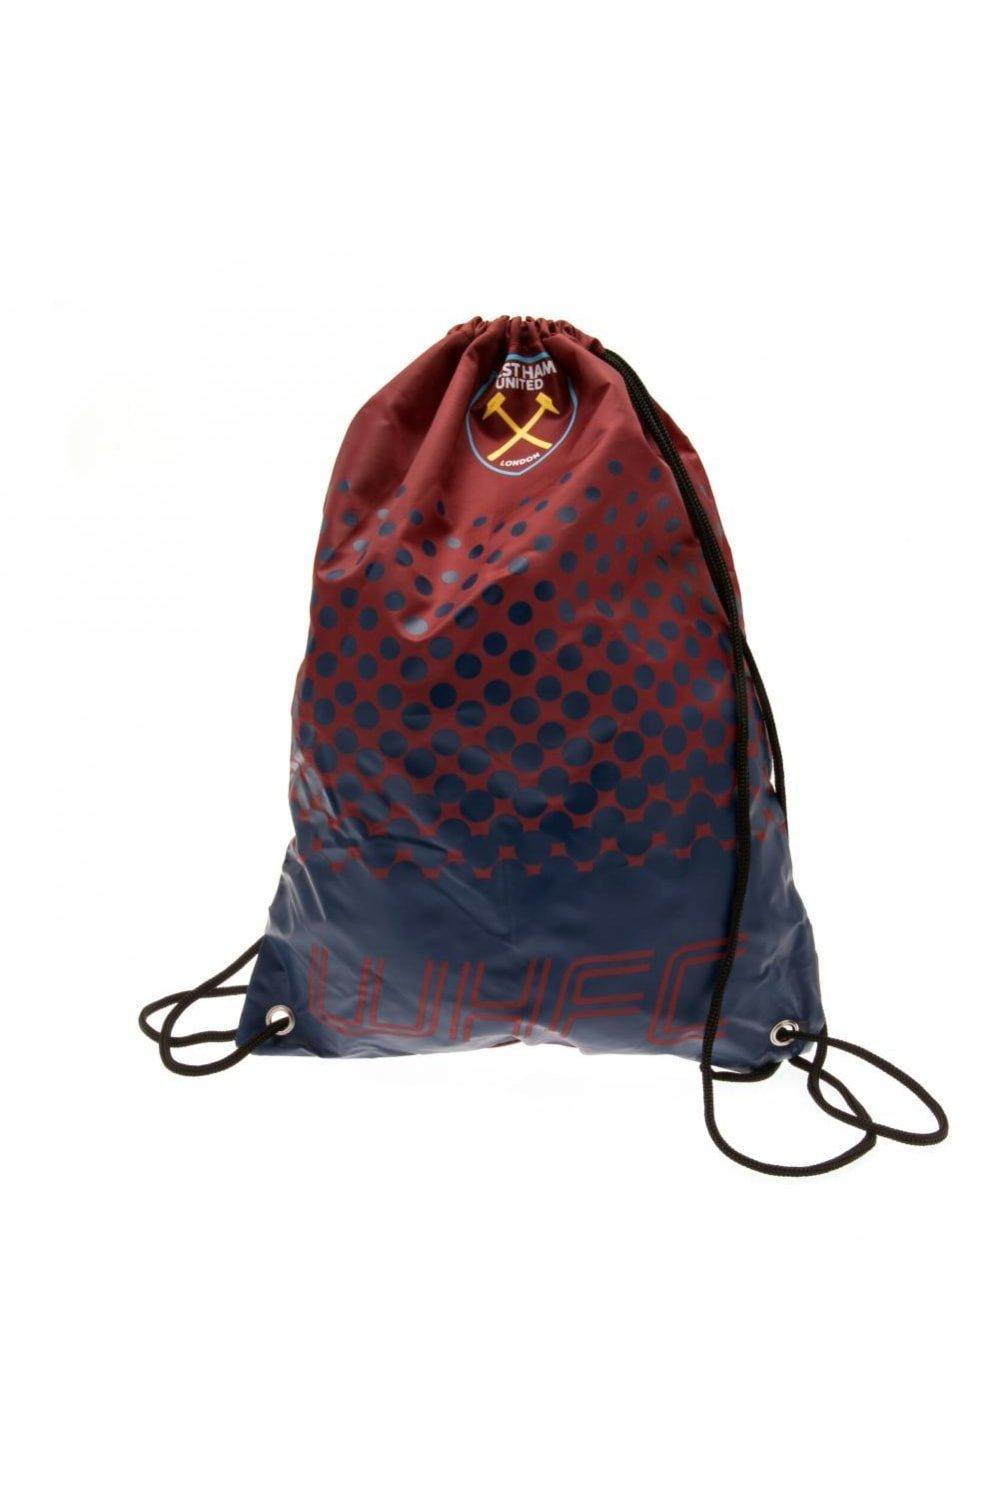 Спортивная сумка Fade Design на шнурке West Ham United FC, красный